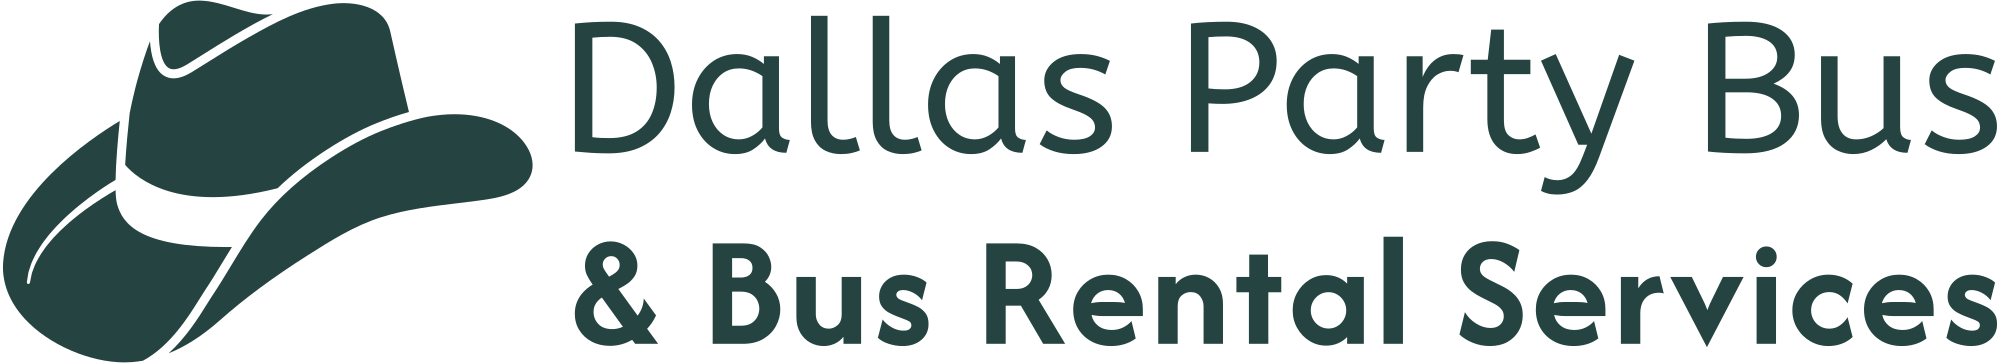 Party Bus Dallas logo